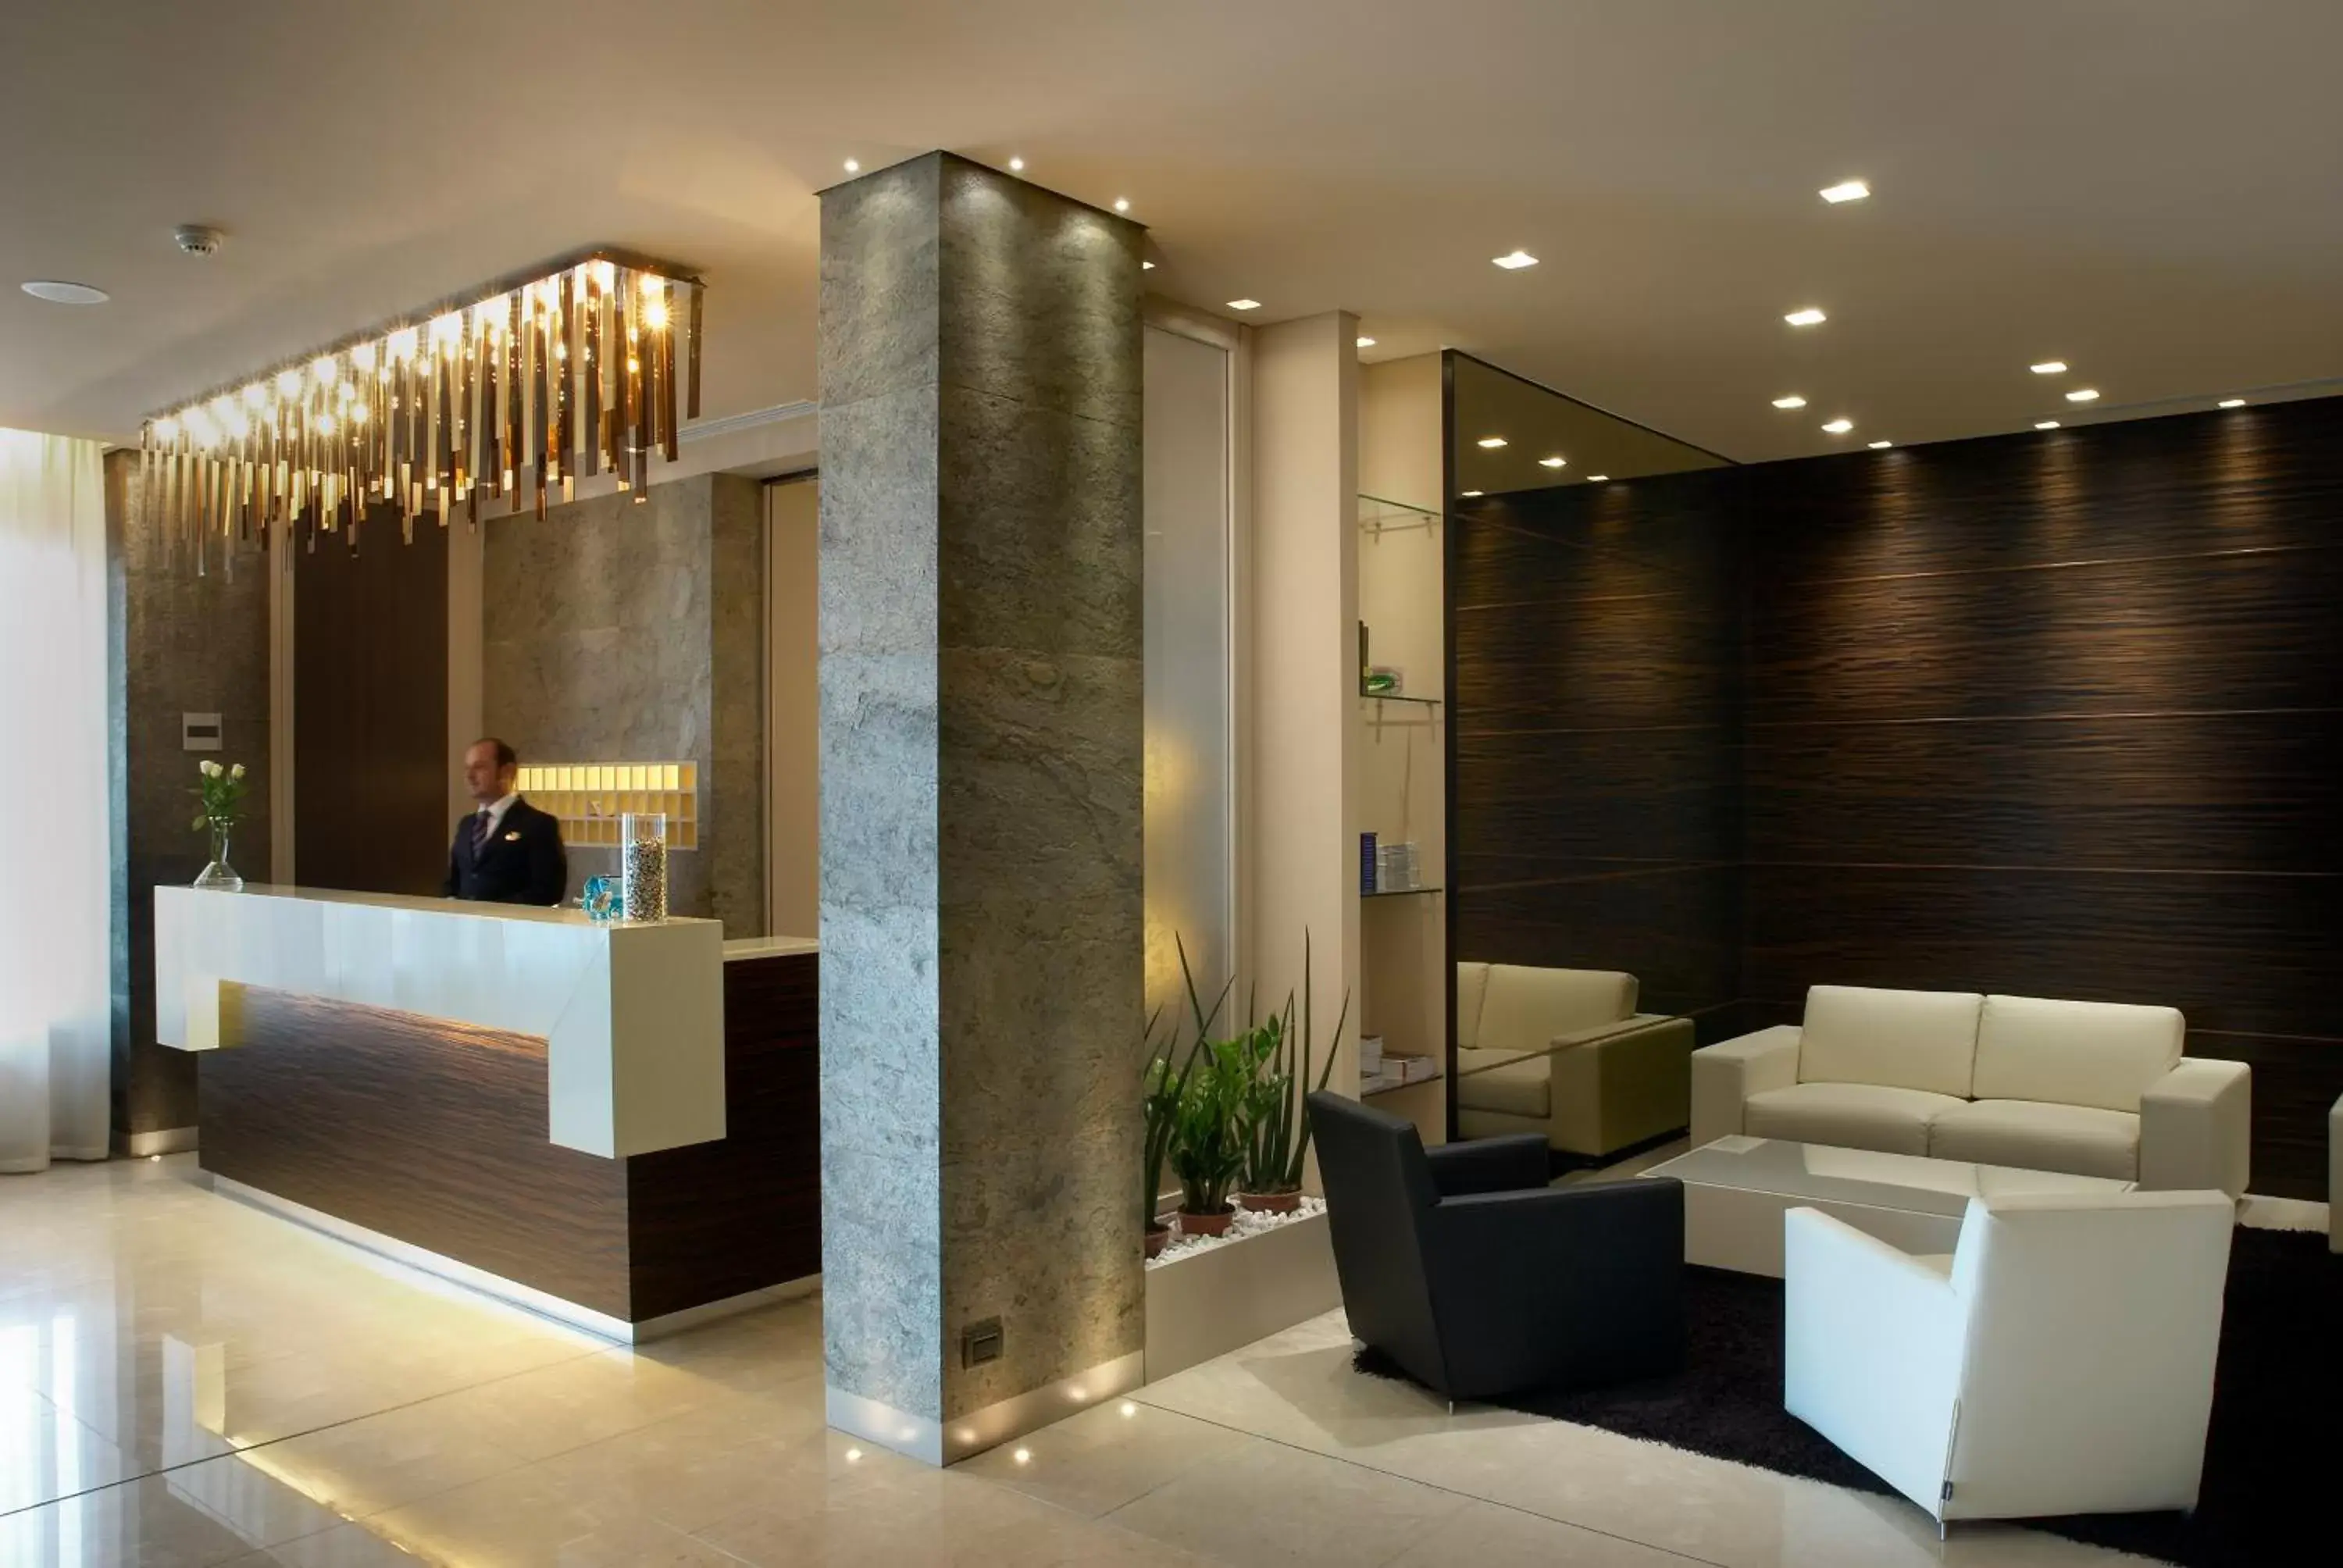 Lobby or reception, Lobby/Reception in Best Western Hotel Tre Torri